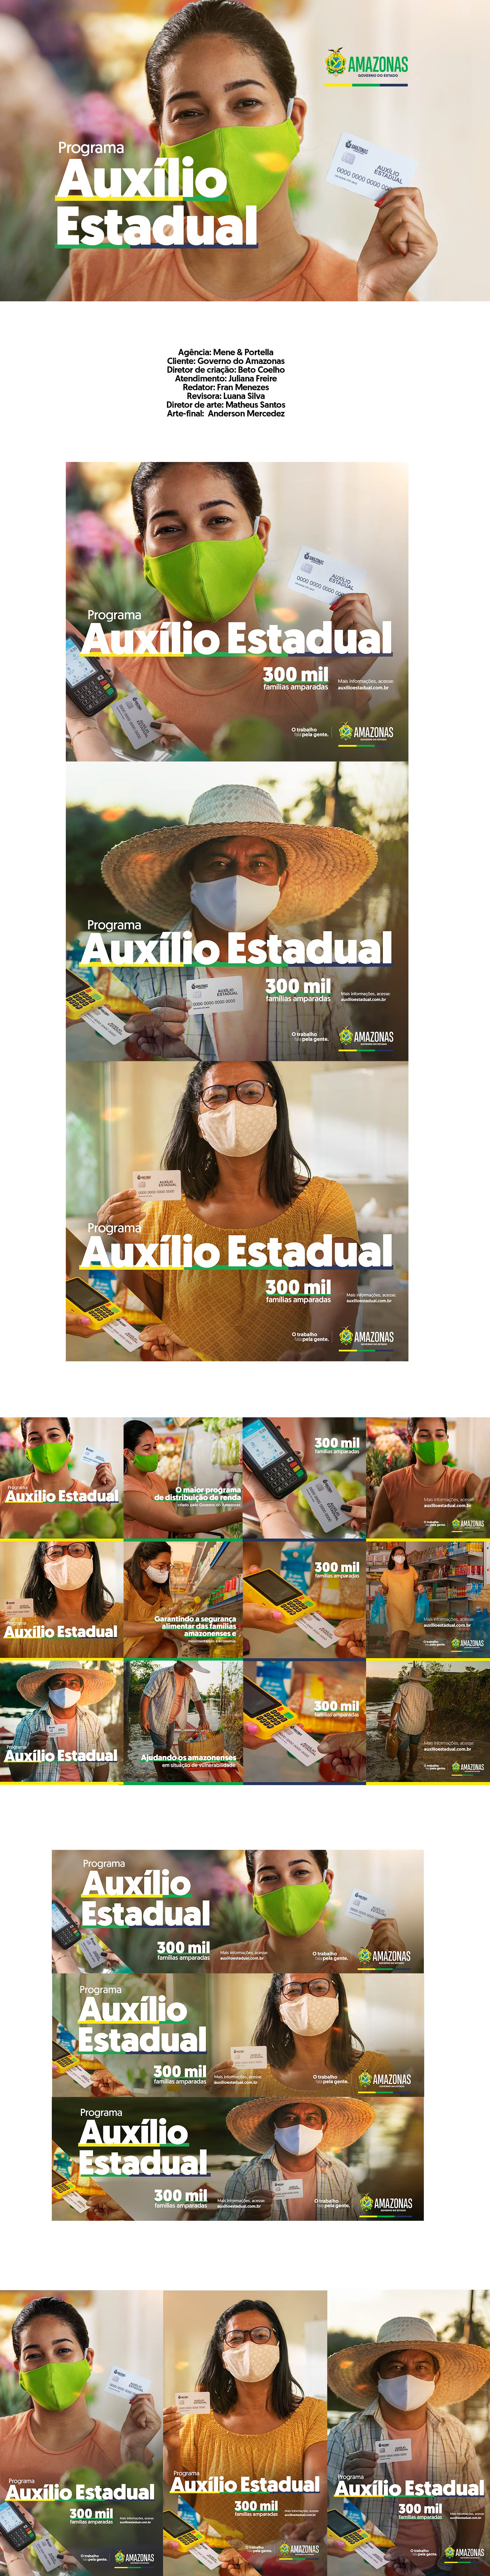 Amazonas campanha design gráfico Direção de arte Governo identidade visual manaus Prefeitura Propaganda publicidade